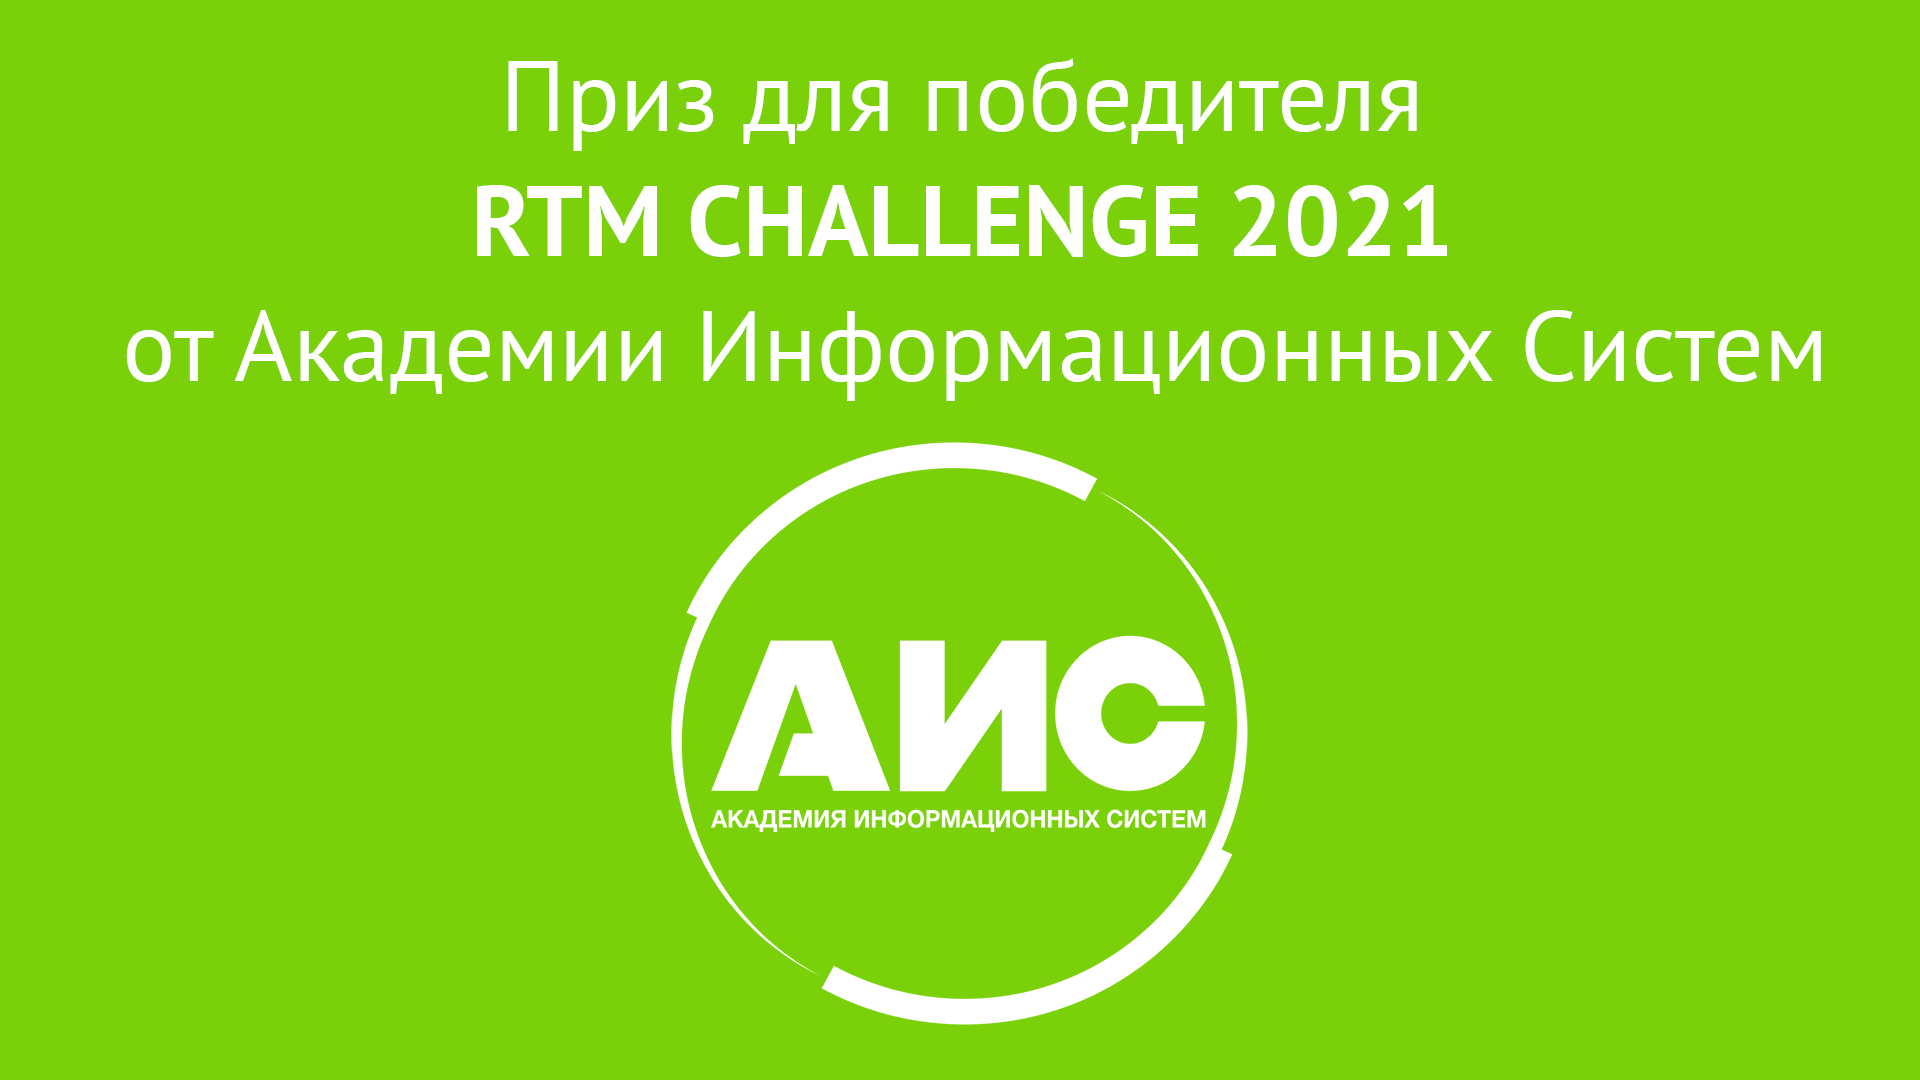 Приз от Академии информационных систем для победителя студенческой олимпиады RTM CHALLENGE 2021